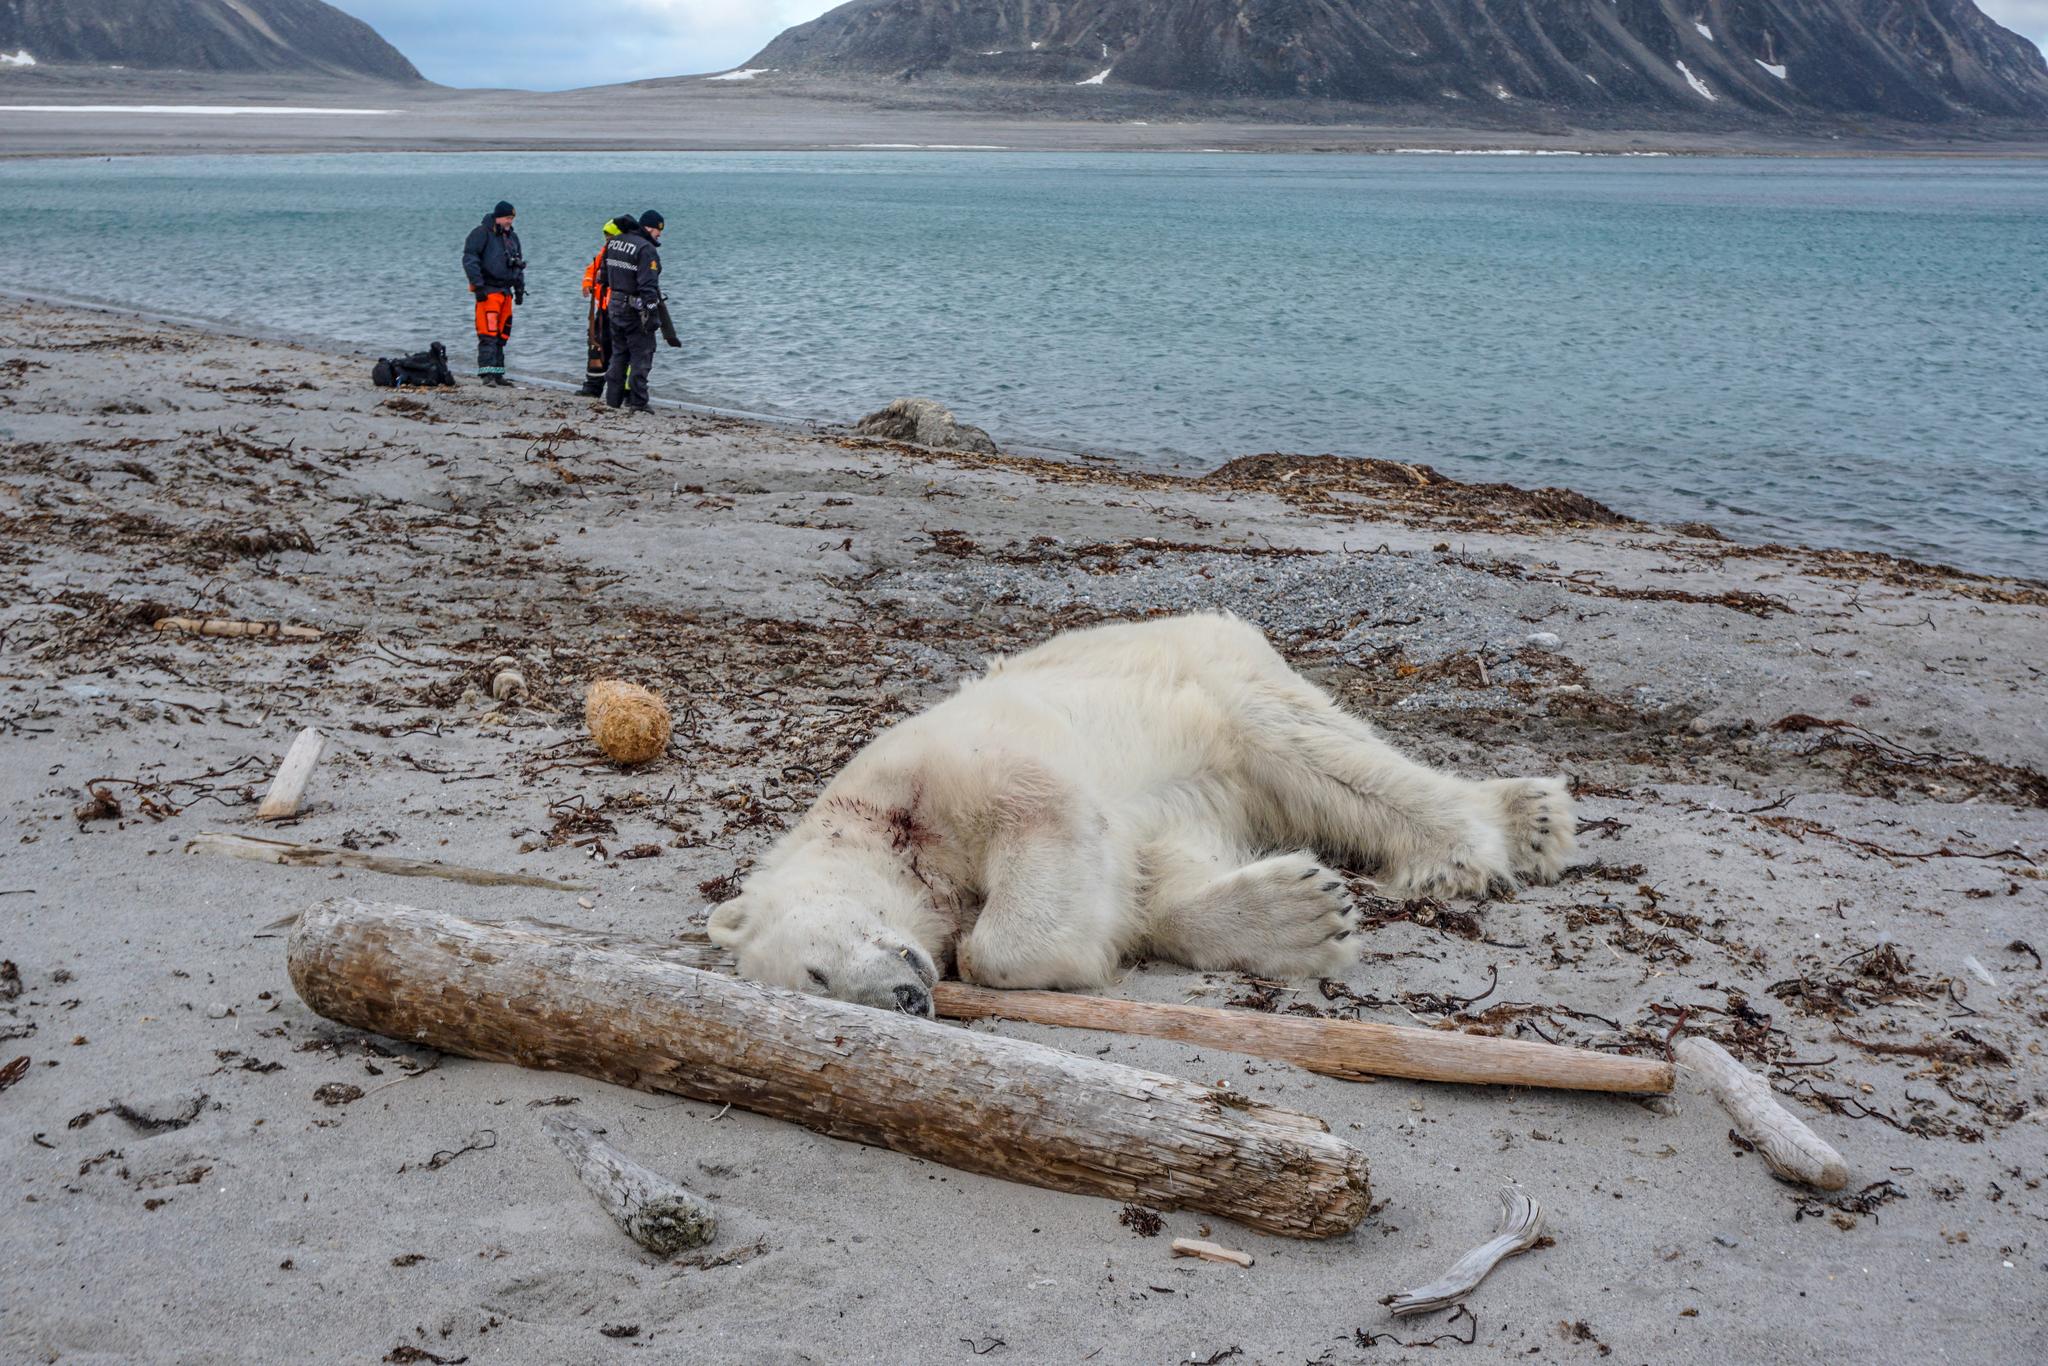  En tysk mann i 40-årene fikk moderate skader da han ble angrepet av isbjørn på Sjuøyane nordøst for Spitsbergen lørdag. Isbjørnen er skutt og drept.